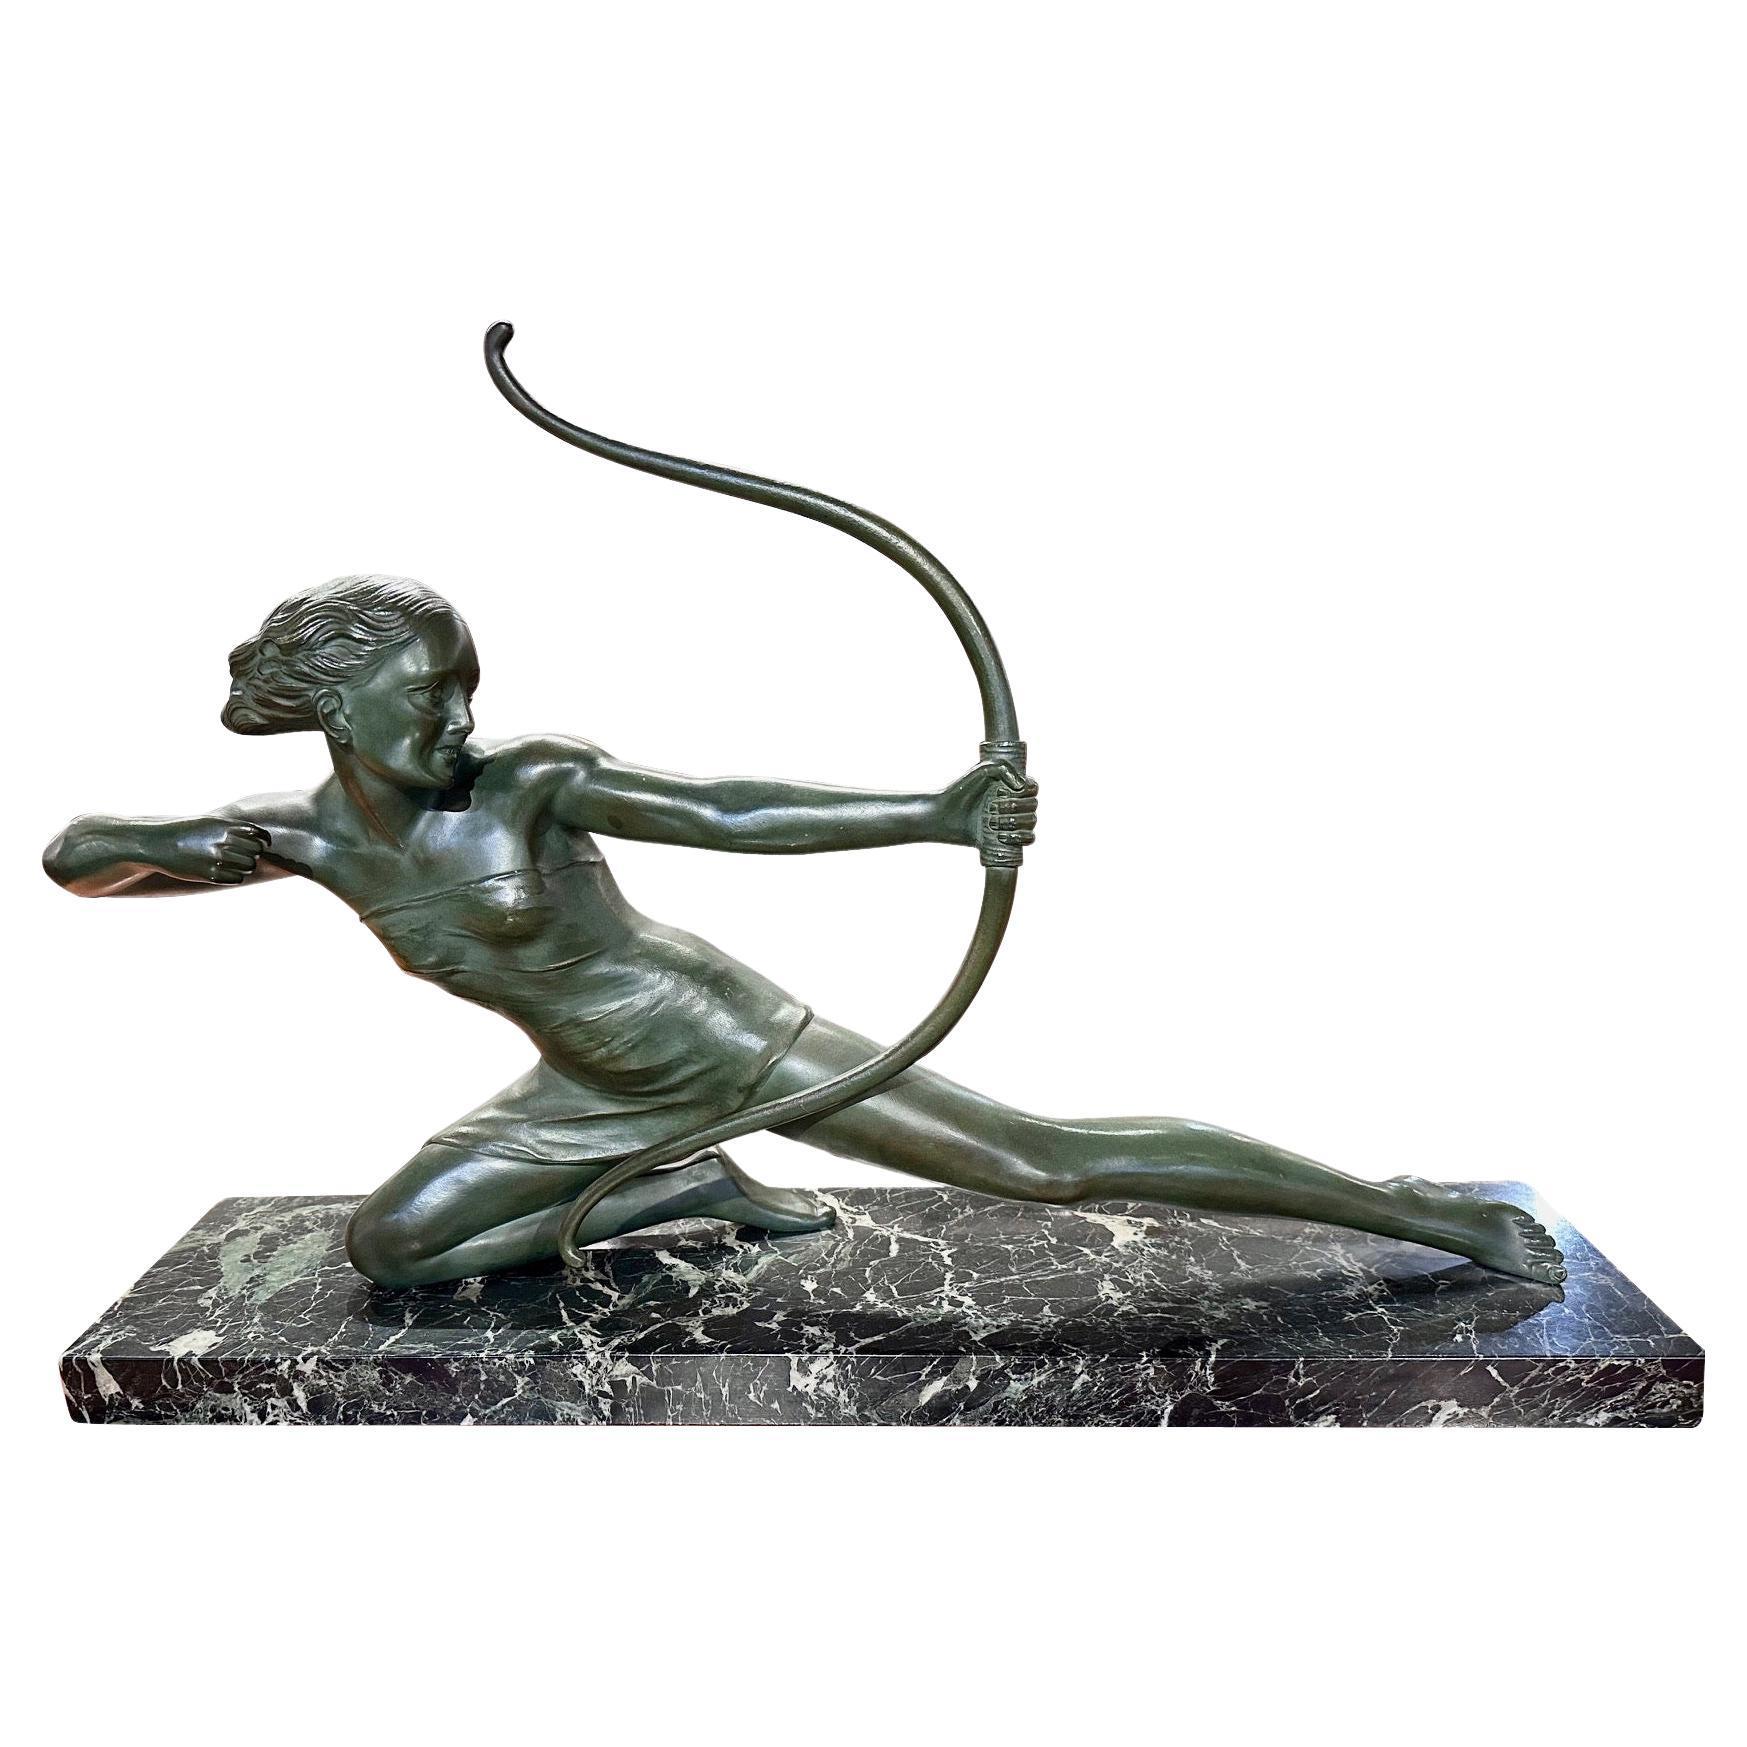 Französische Art Deco Diana die Jägerin Bronze von S. Melanie 1930er Jahre, hergestellt in den 1930er Jahren, steht als ein Zeugnis für die künstlerische Brillanz der Epoche. Diese außergewöhnliche Skulptur strahlt durch ihre Größe, ihr Gewicht und